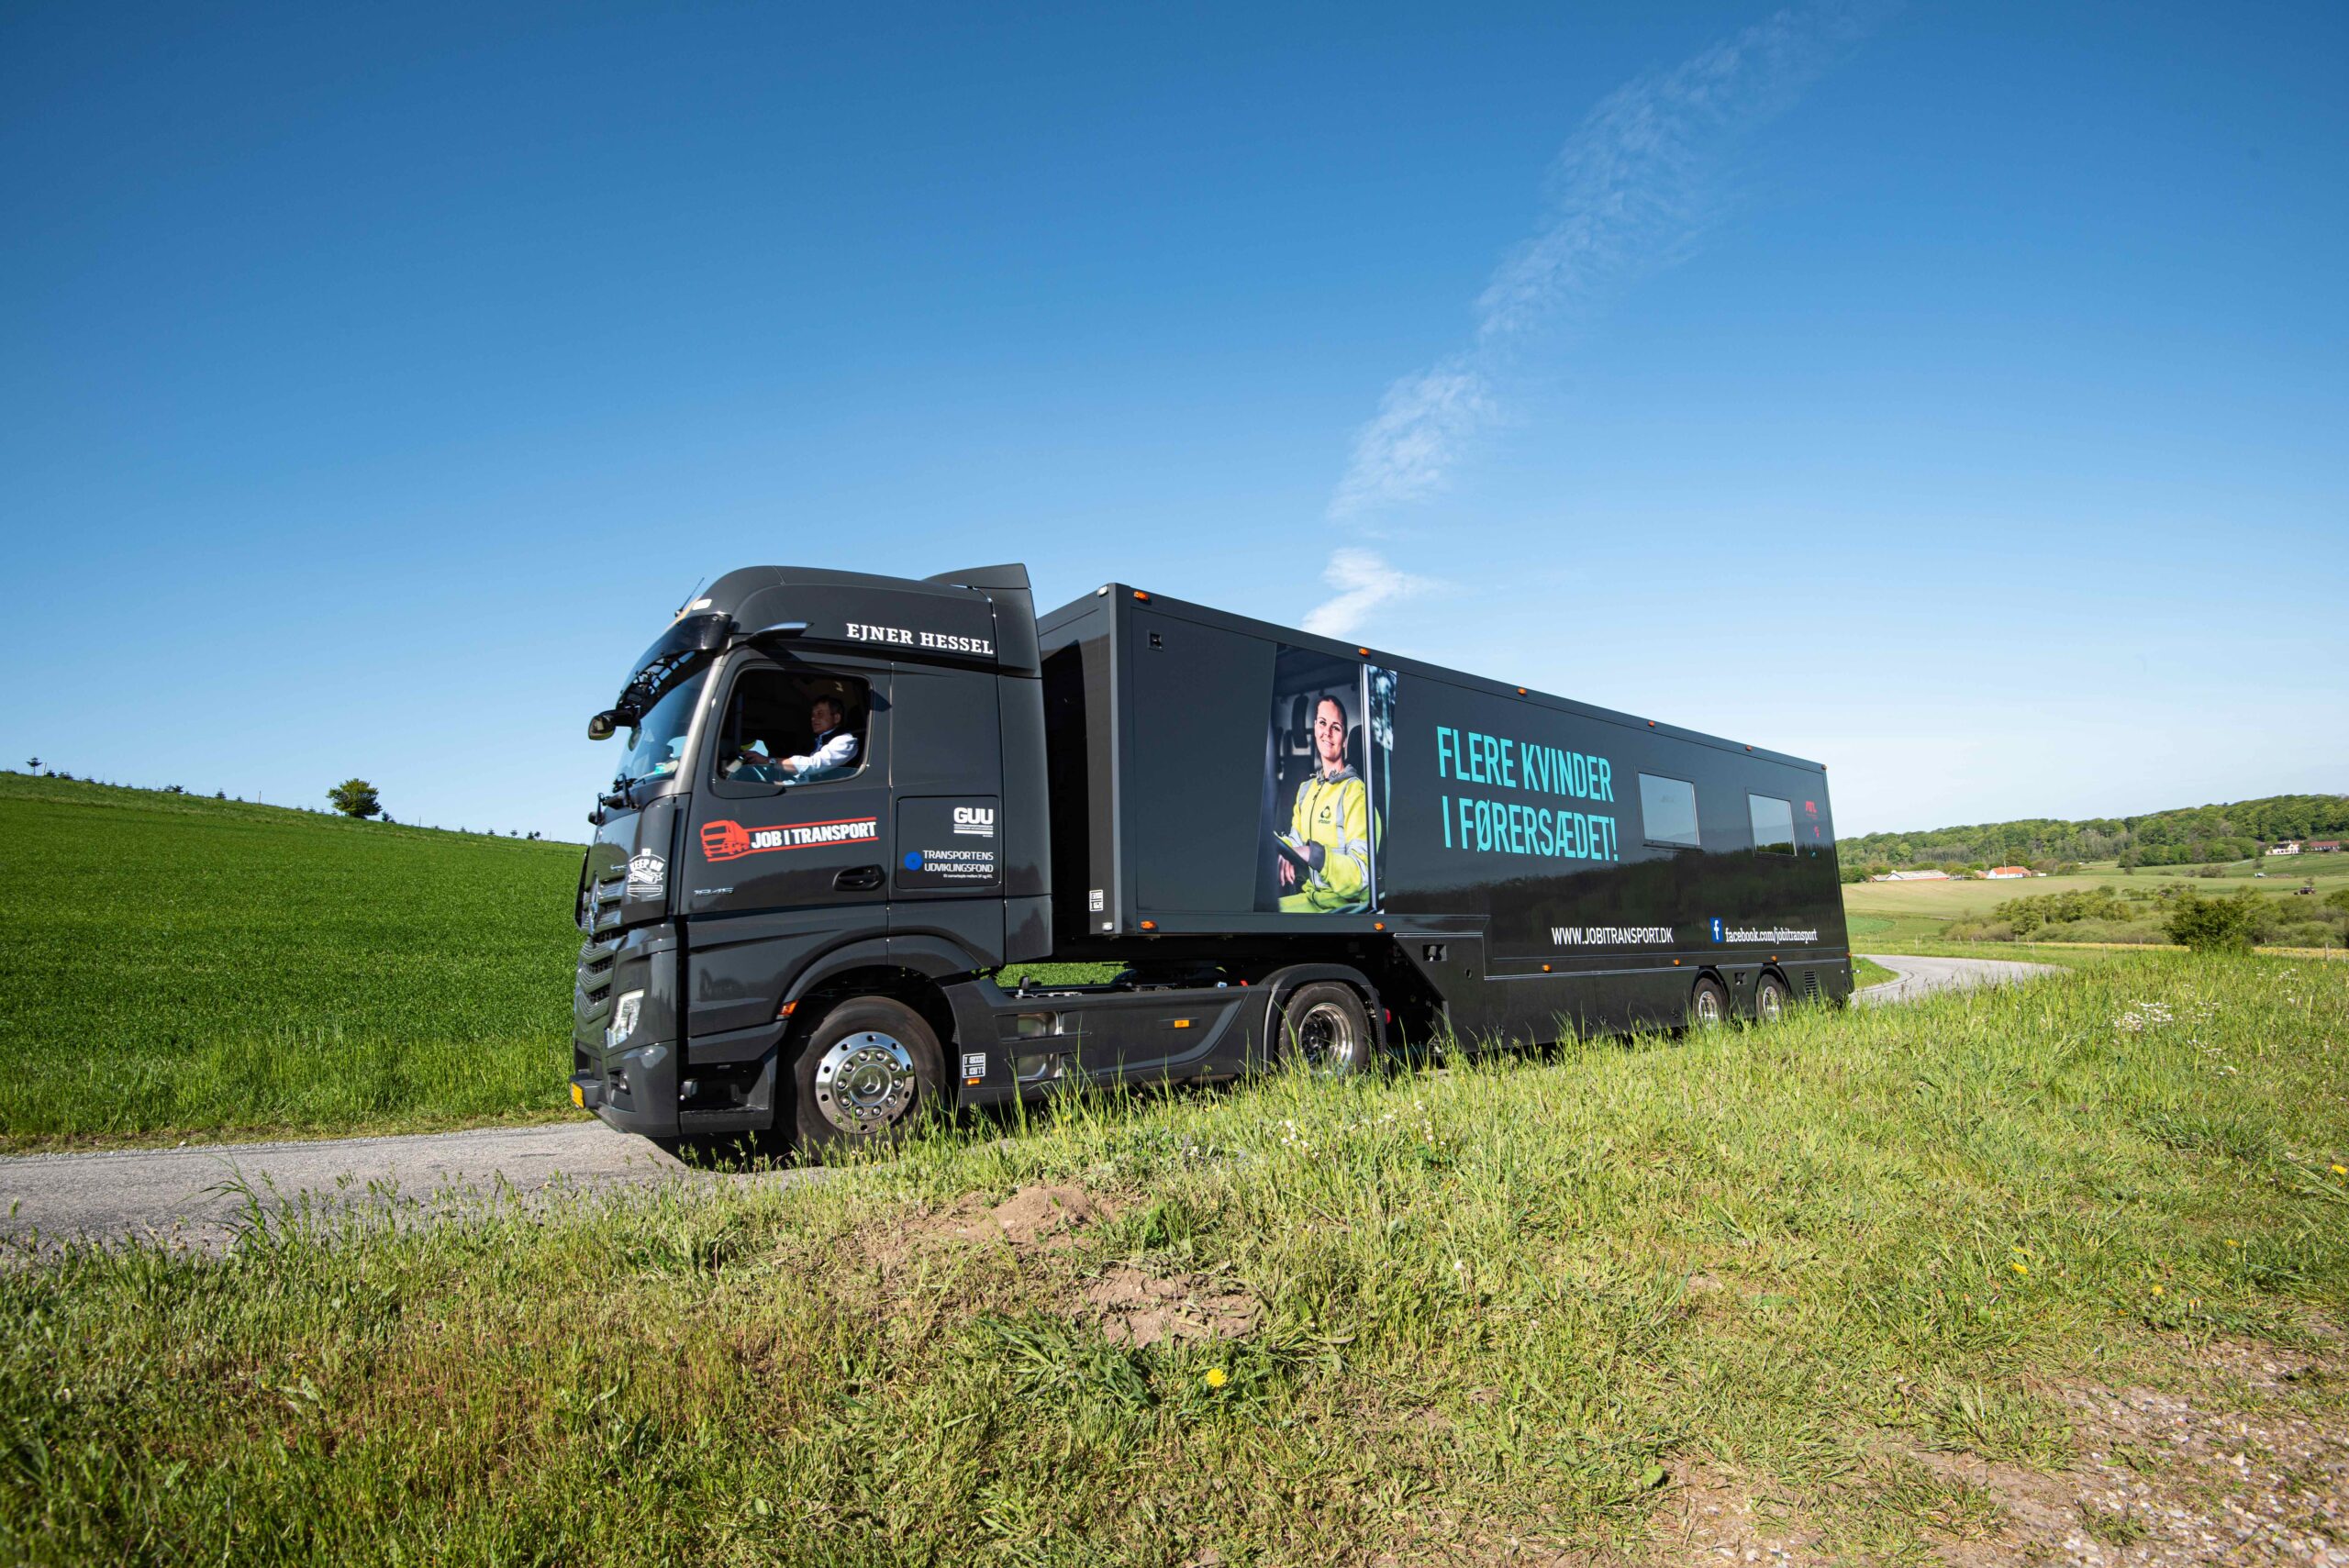 Populær kæmpe-truck på Danmarksturné besøger Roskilde